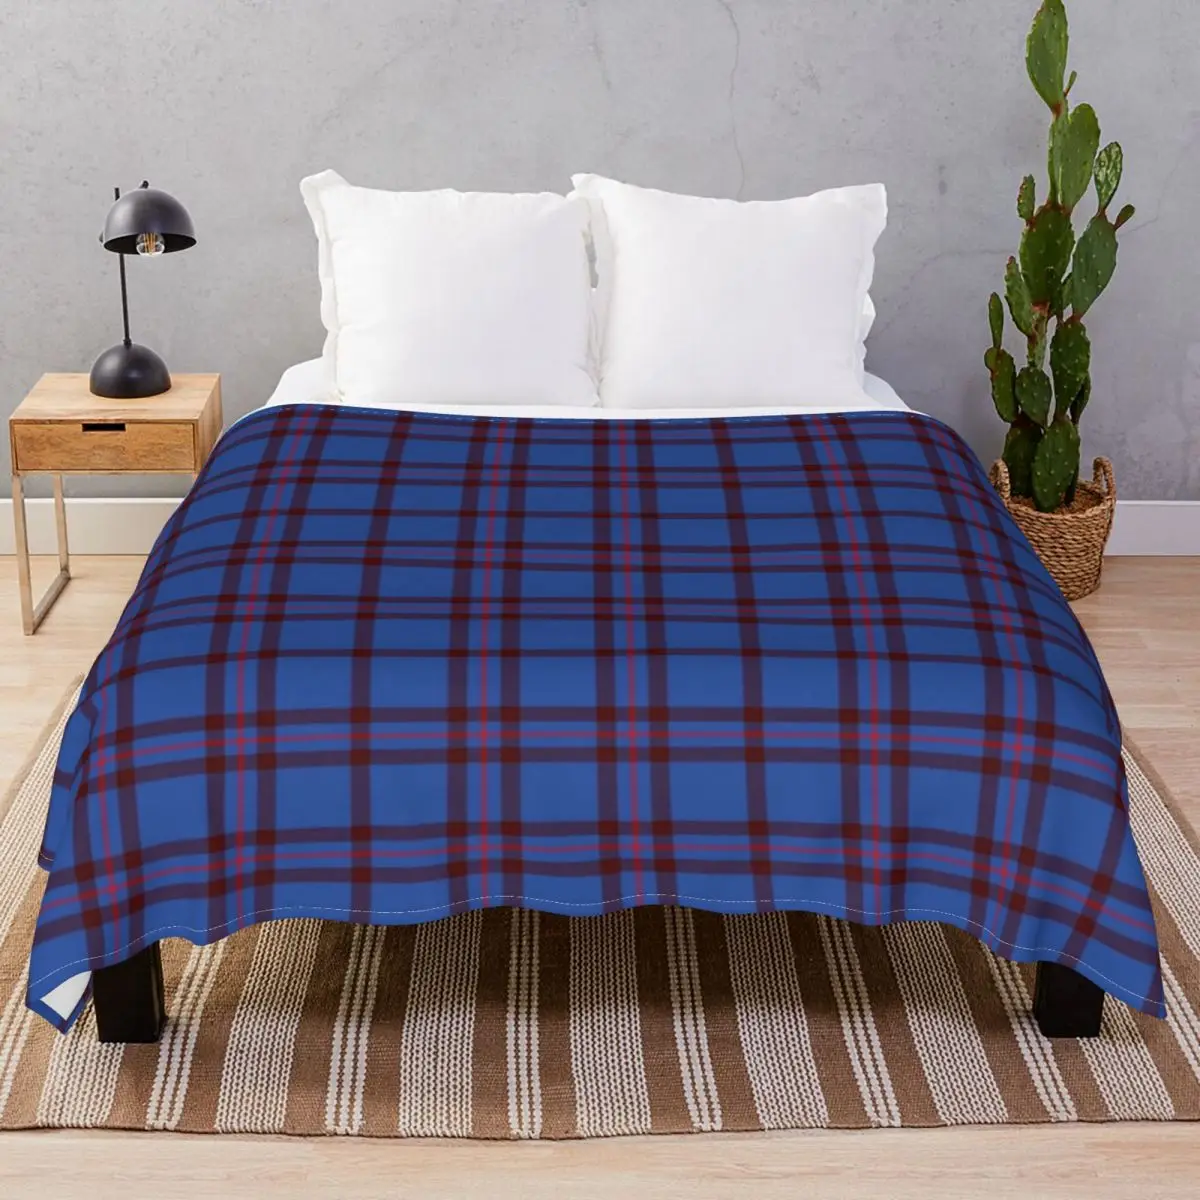 Clan Elliott Tartan Blanket Flannel Decoration Lightweight Throw Blankets for Bed Home Couch Travel Cinema